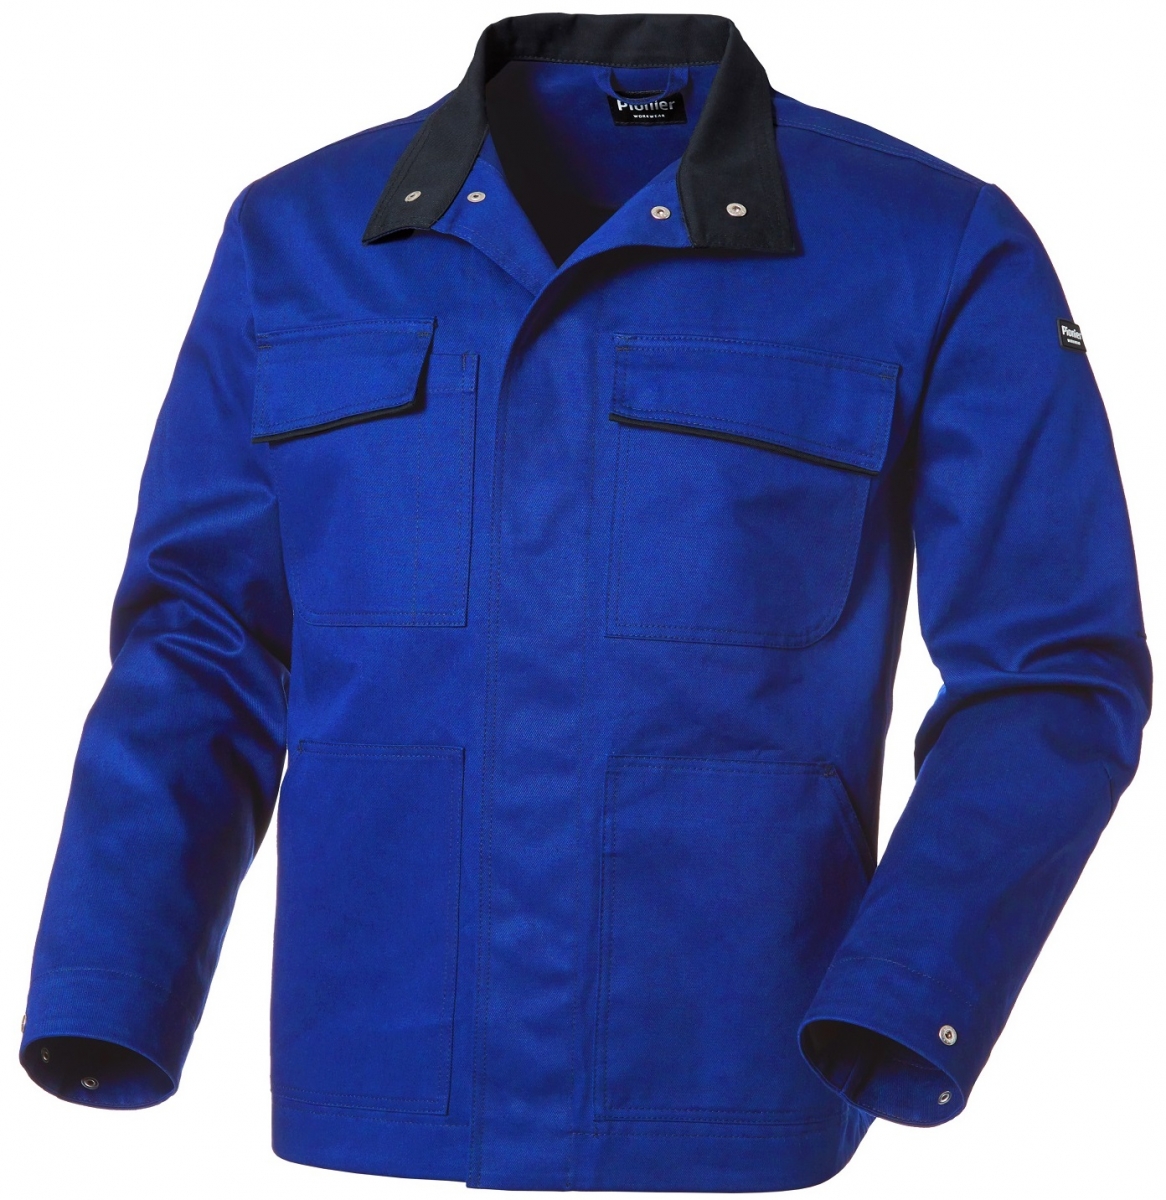 PIONIER-Workwear, Bundjacke, New Cotton Pure, kornblau/schwarz